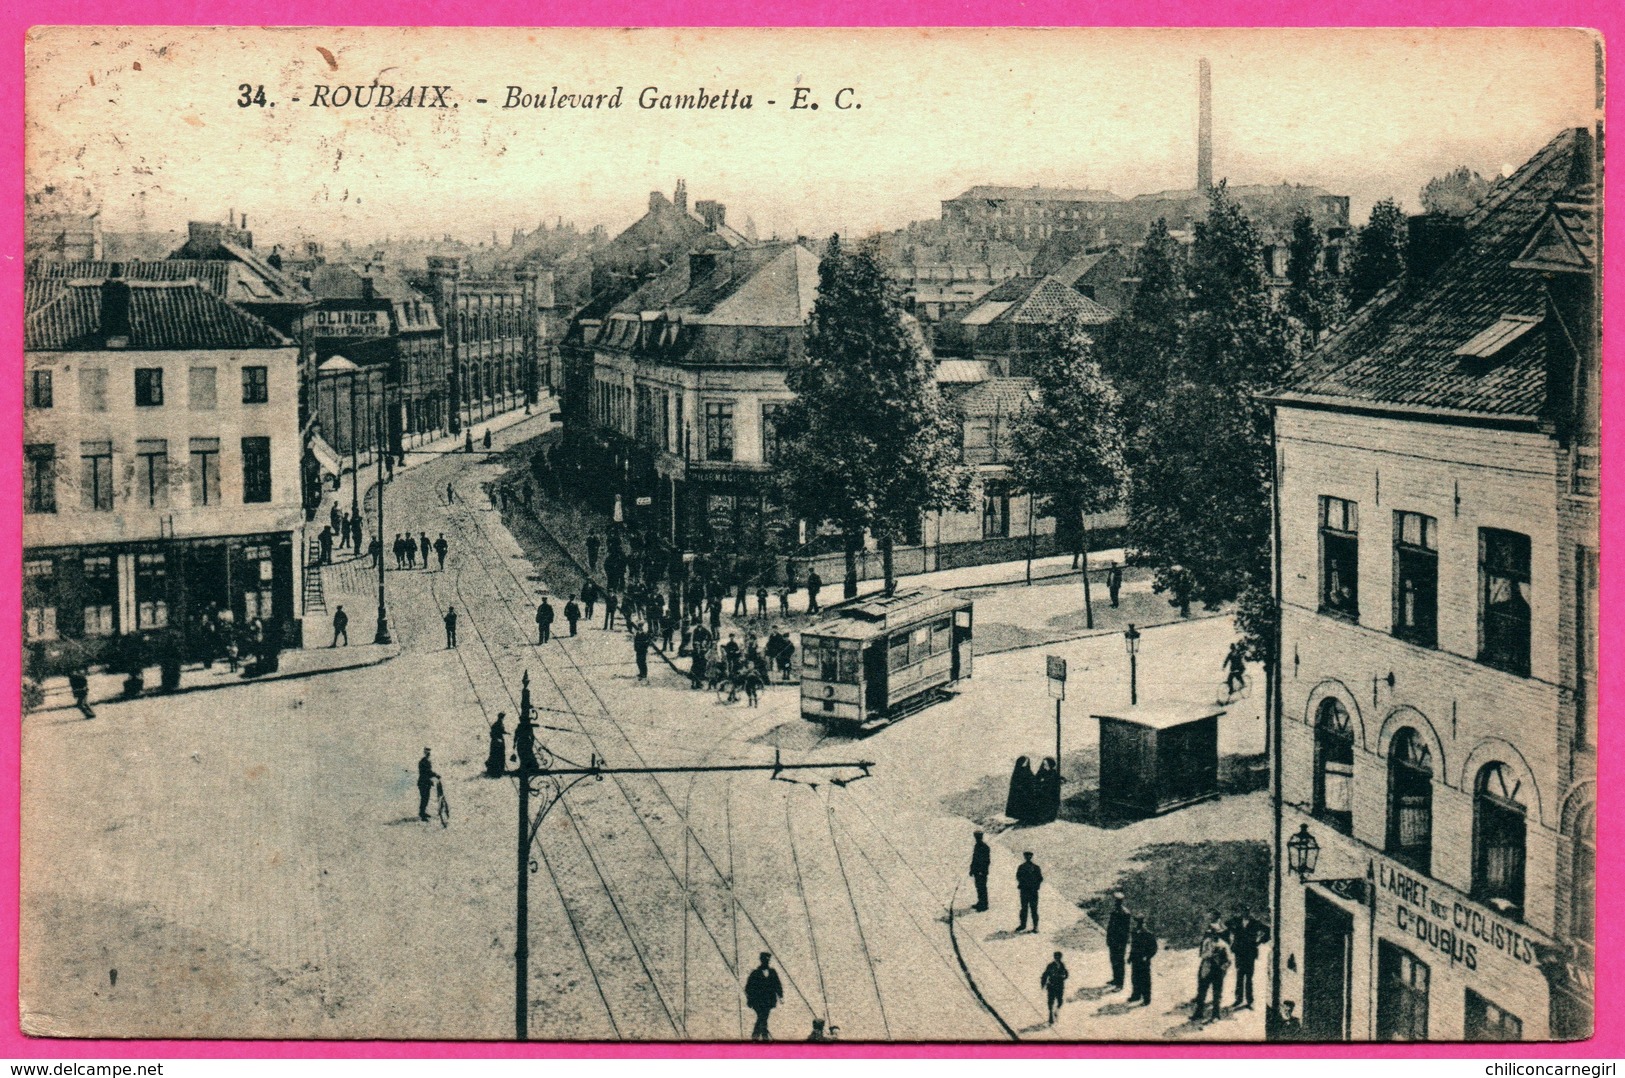 Roubaix - Boulevard Gambetta - Tram - Tramway - A L'arret Des Cycliste C. DUBUS - Animée - Edit. E. CAILLEUX - 1924 - Roubaix